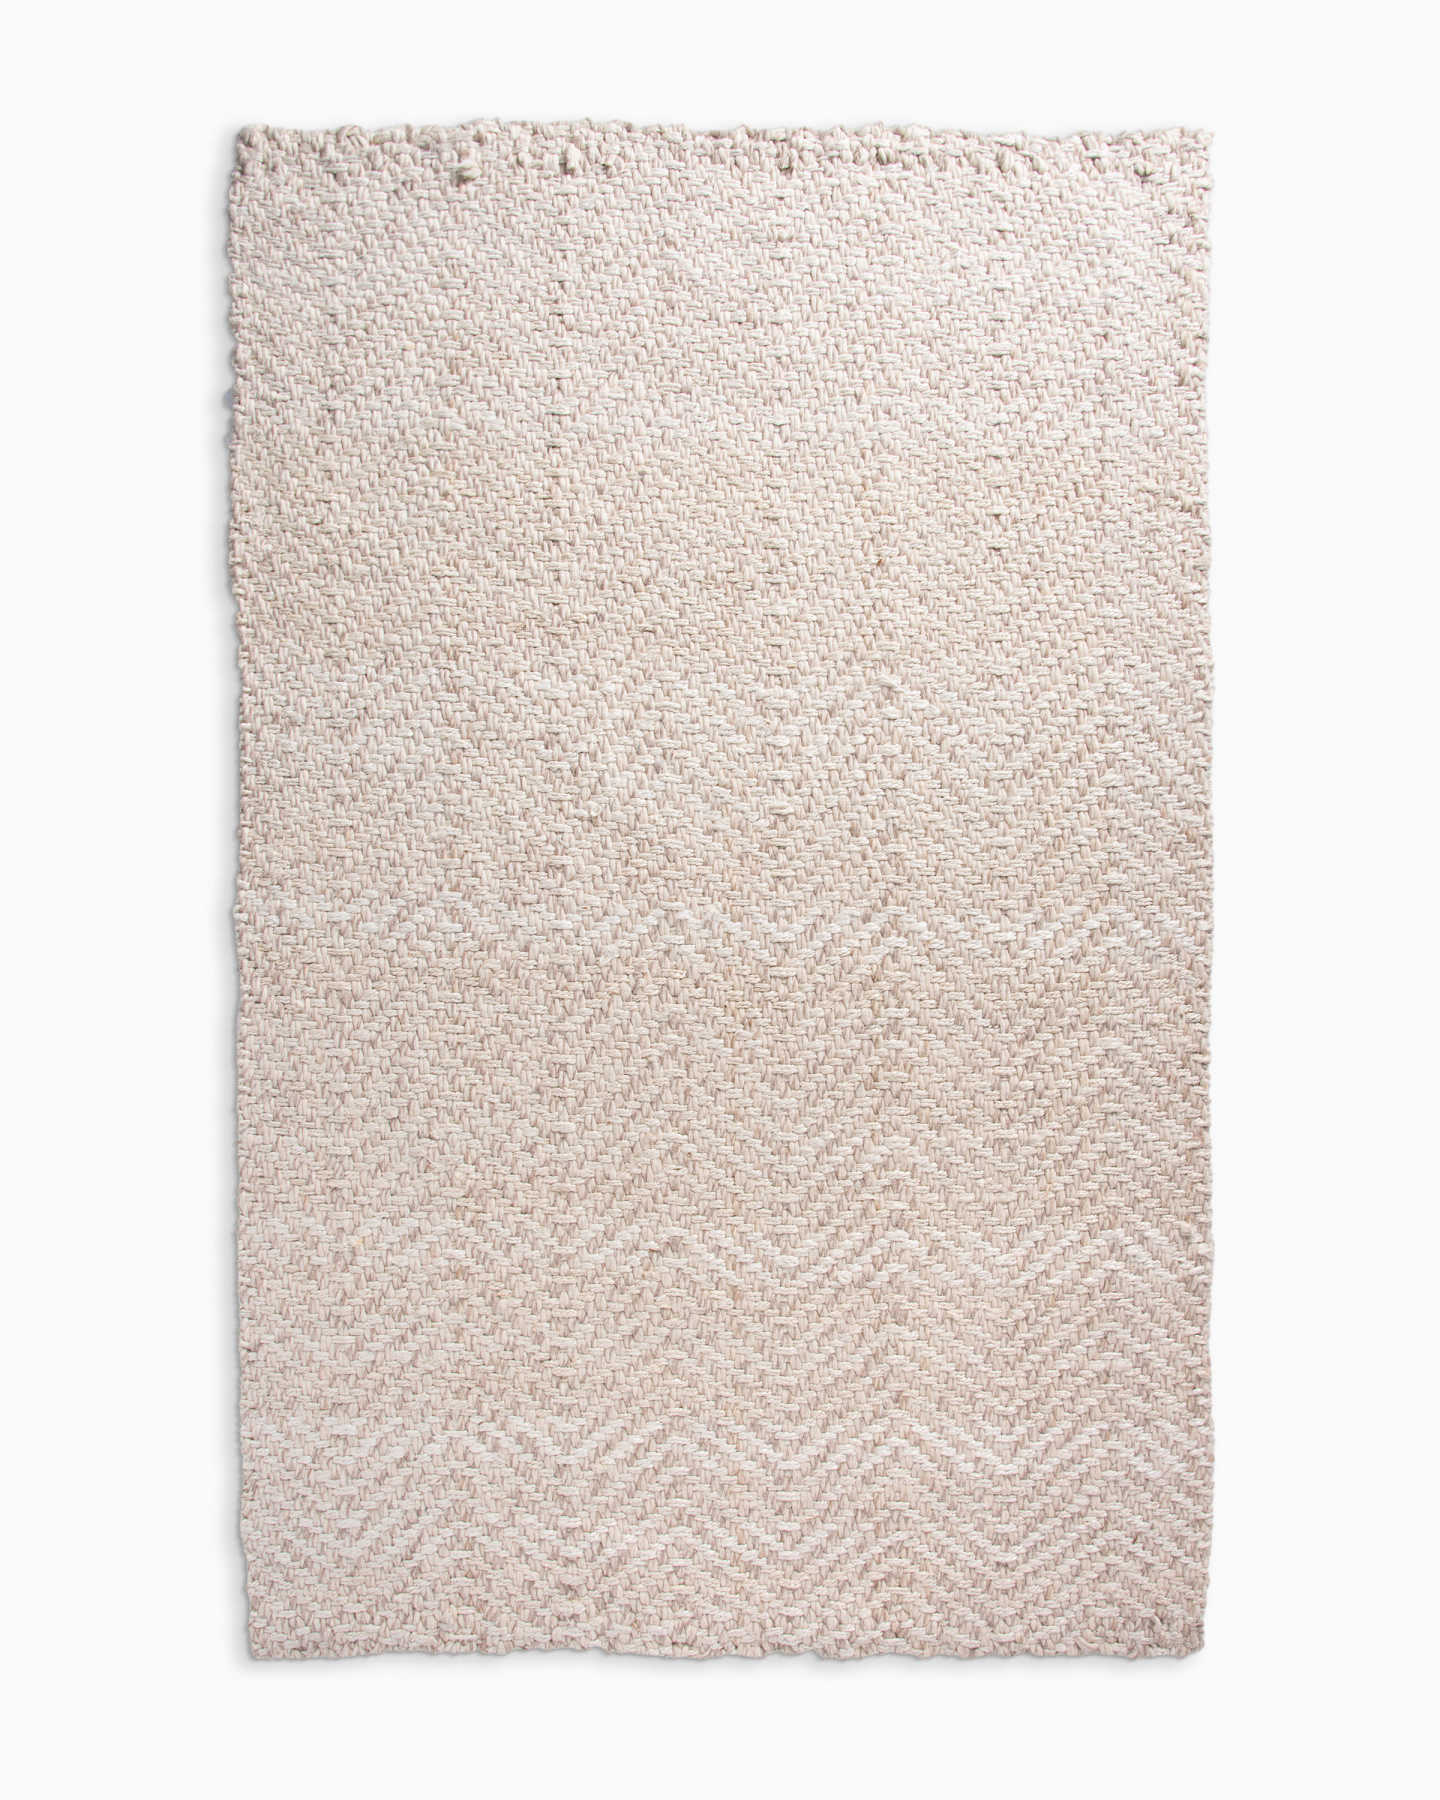 Wool and Jute Herringbone Rug - Natural/White